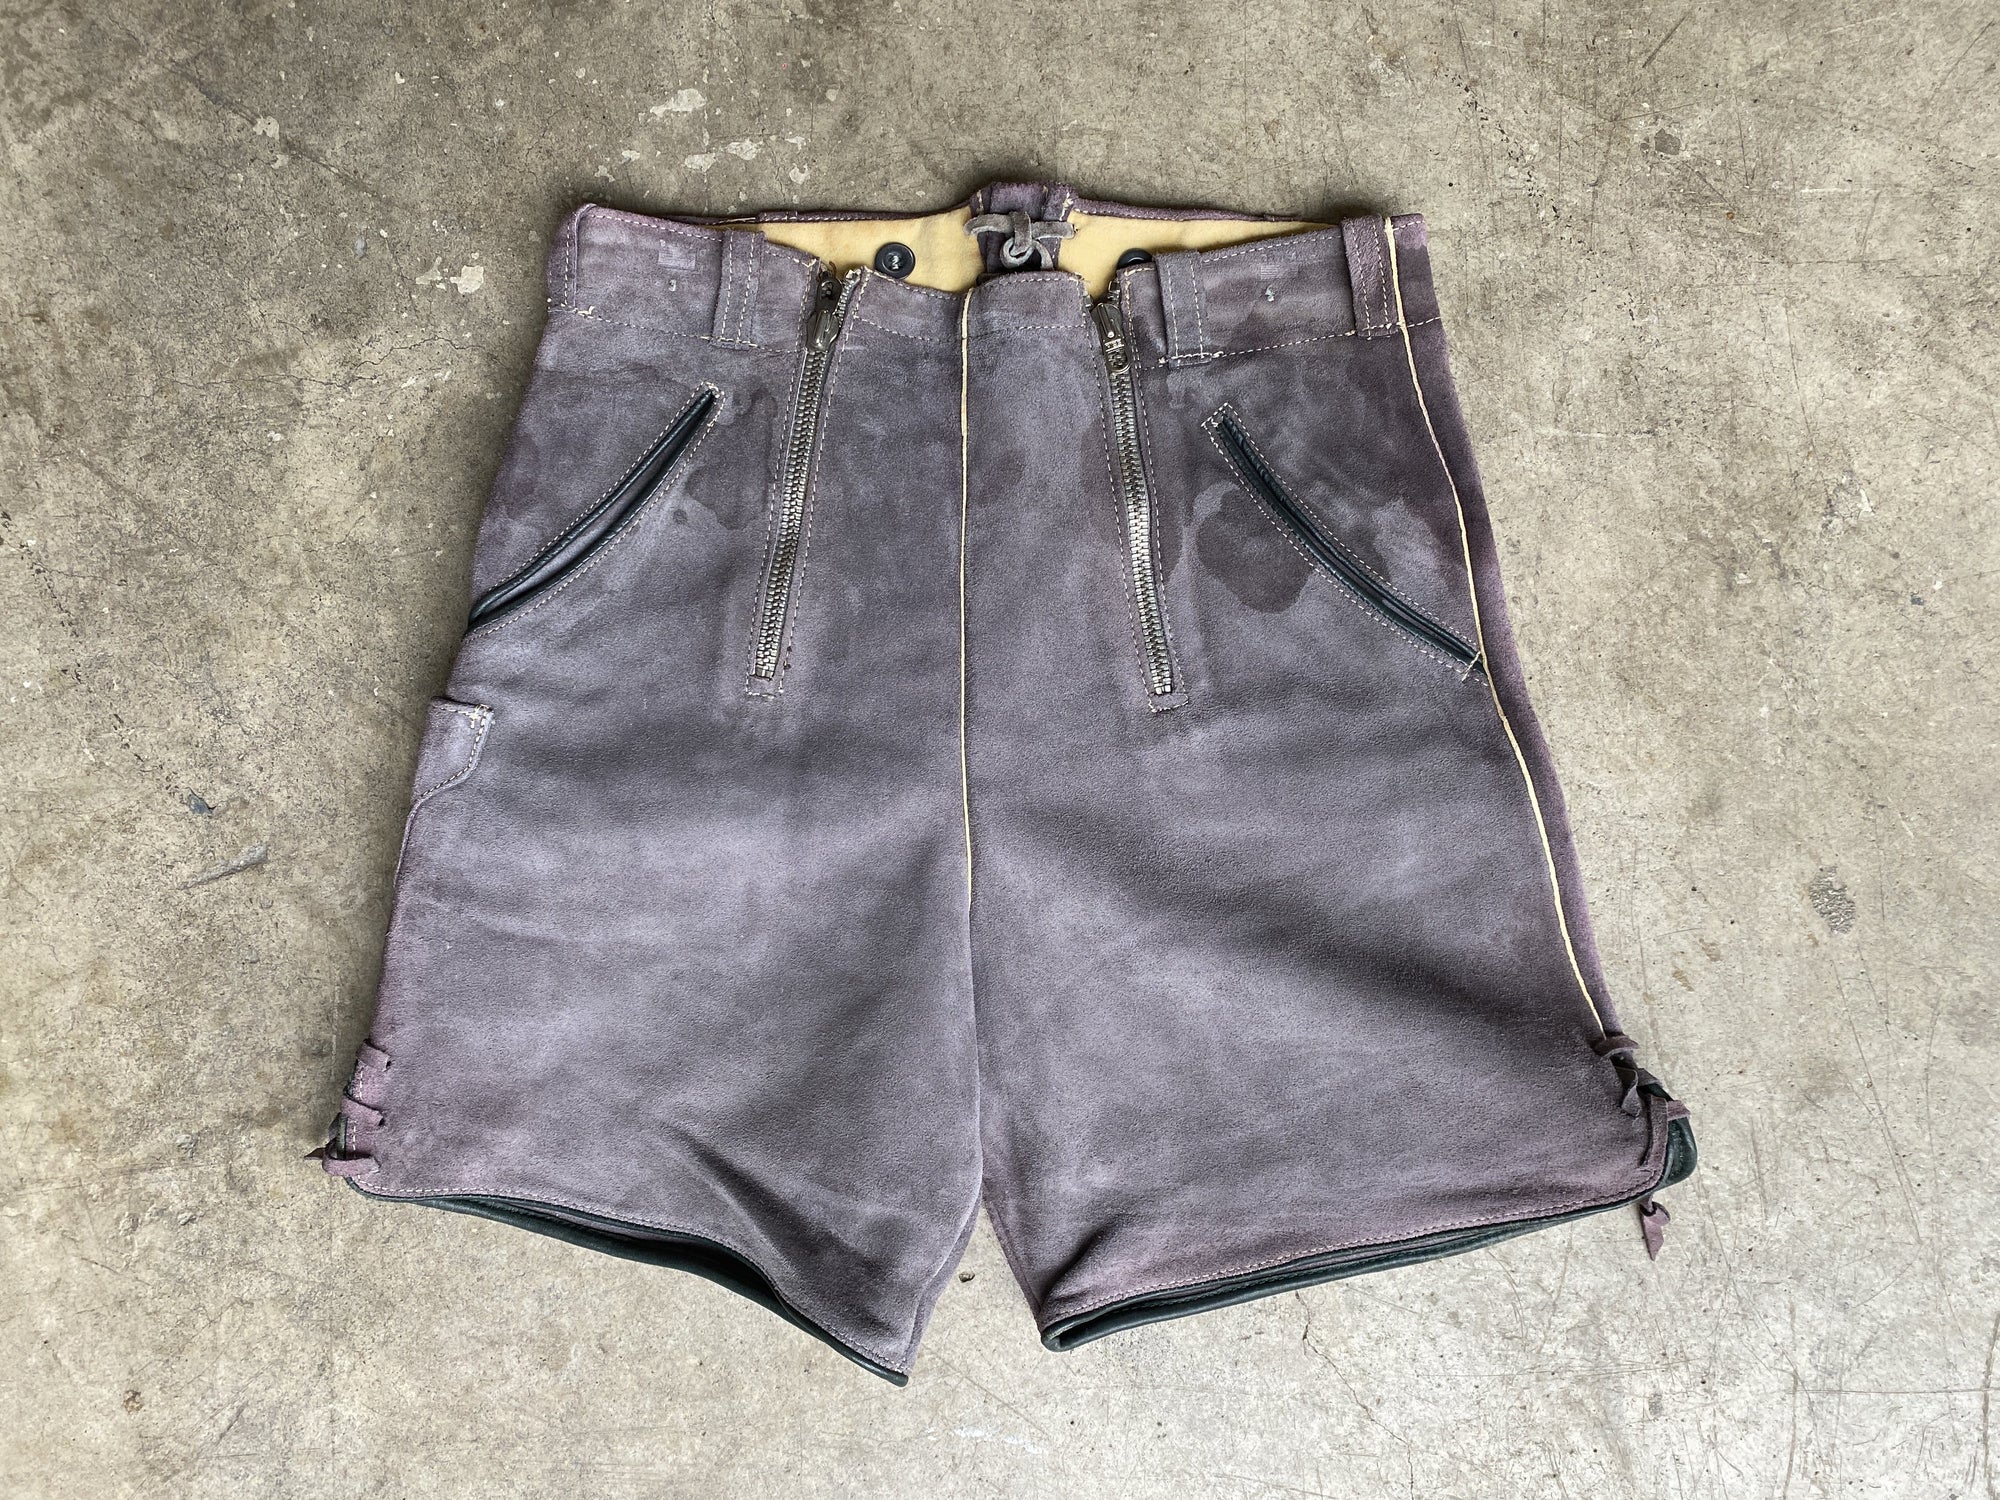 Vintage Lavender Suede Lederhosen Shorts